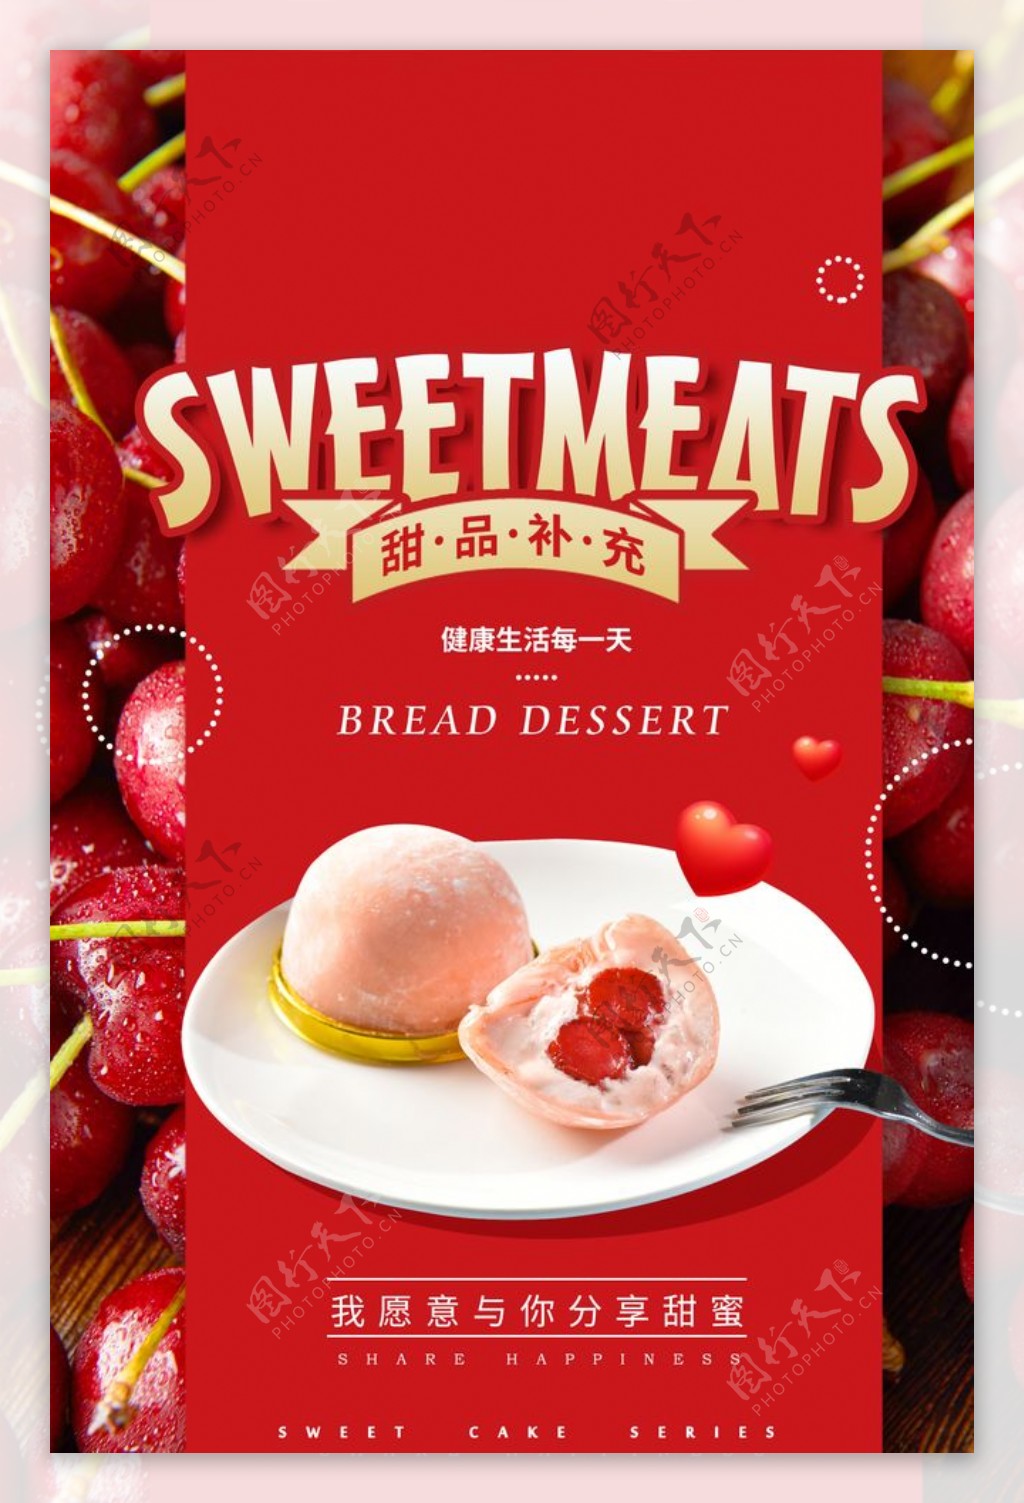 甜品美食活动促销宣传海报素材